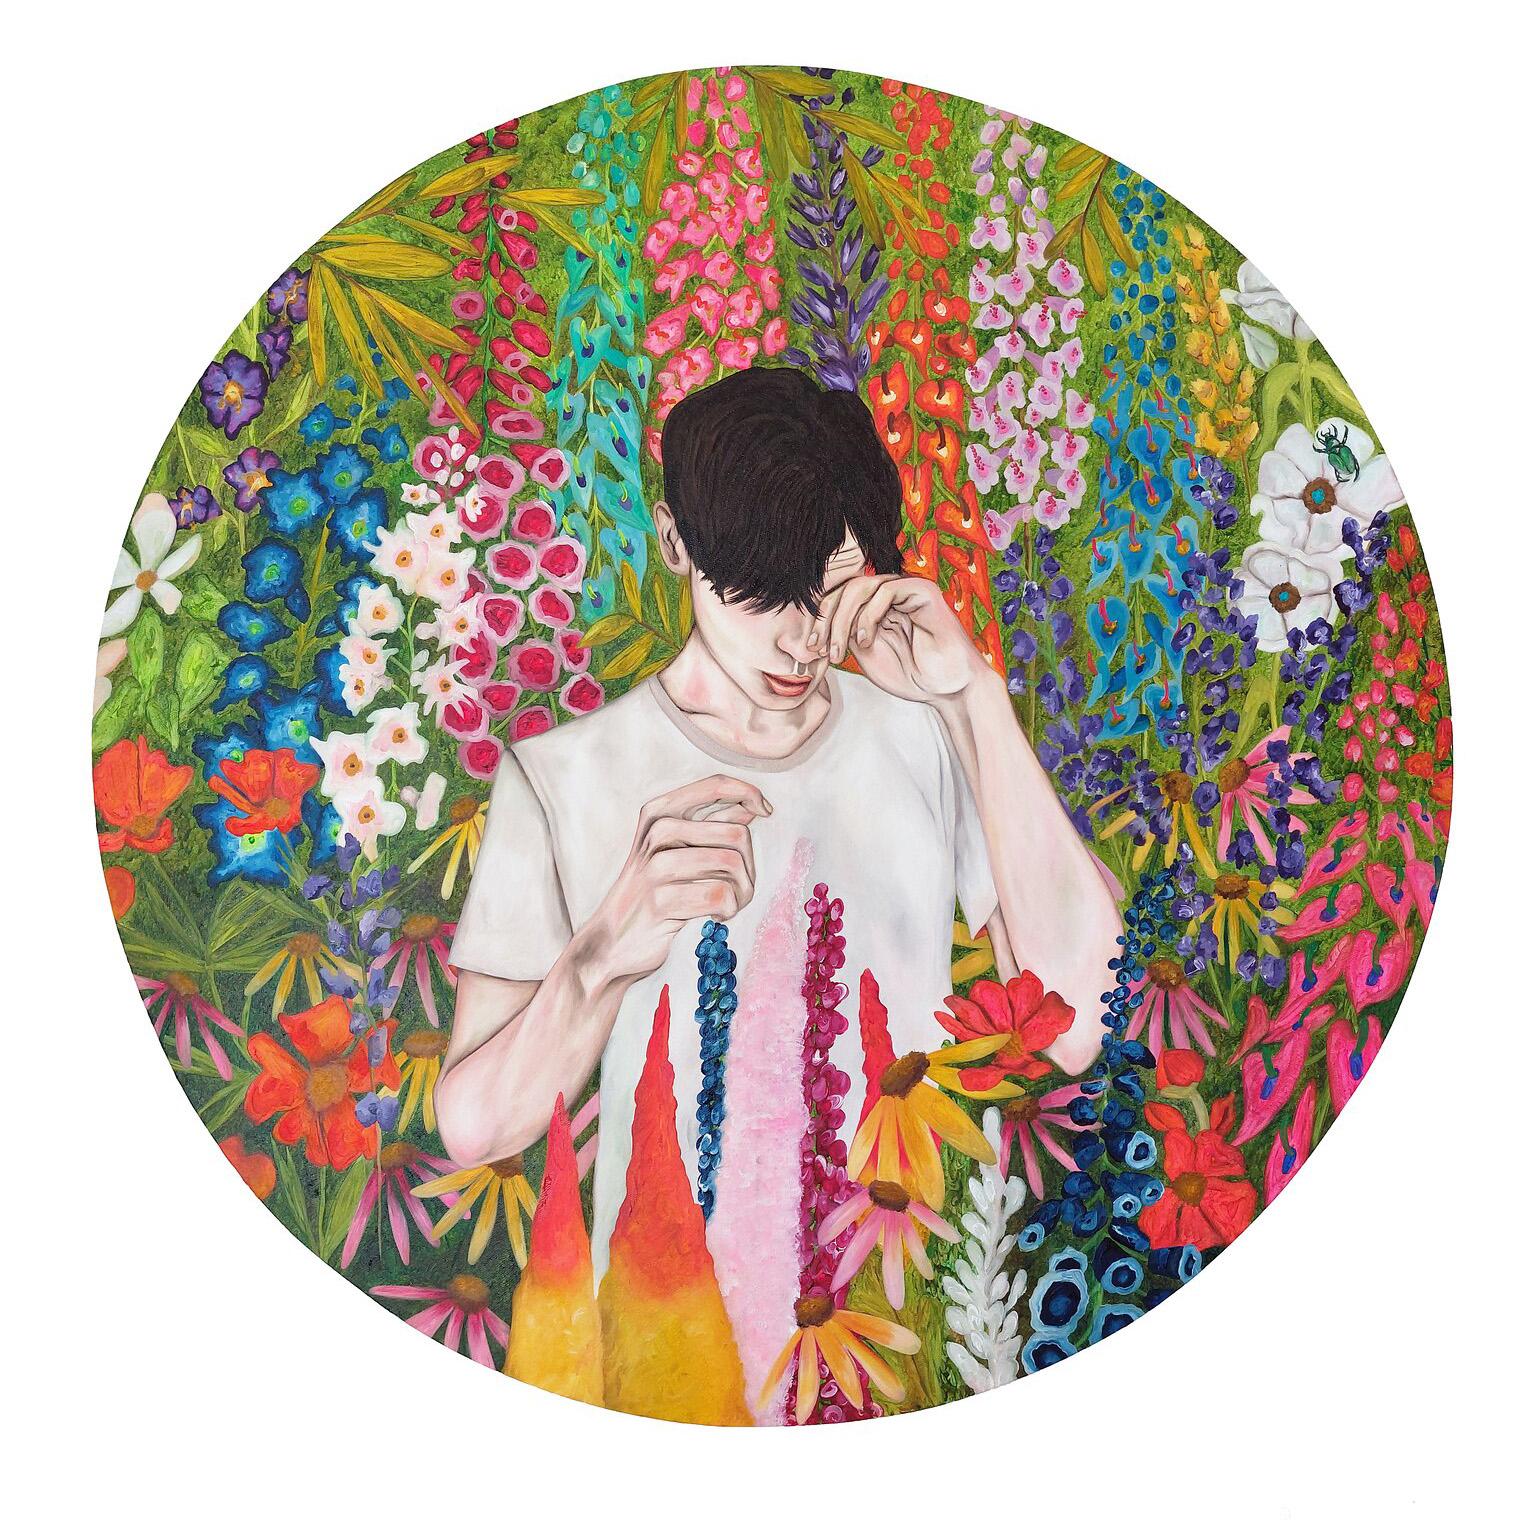 Portrait Painting Ramonn Vieitez de Lima - Le garçon avec une allergie de pollen, peinture figurative